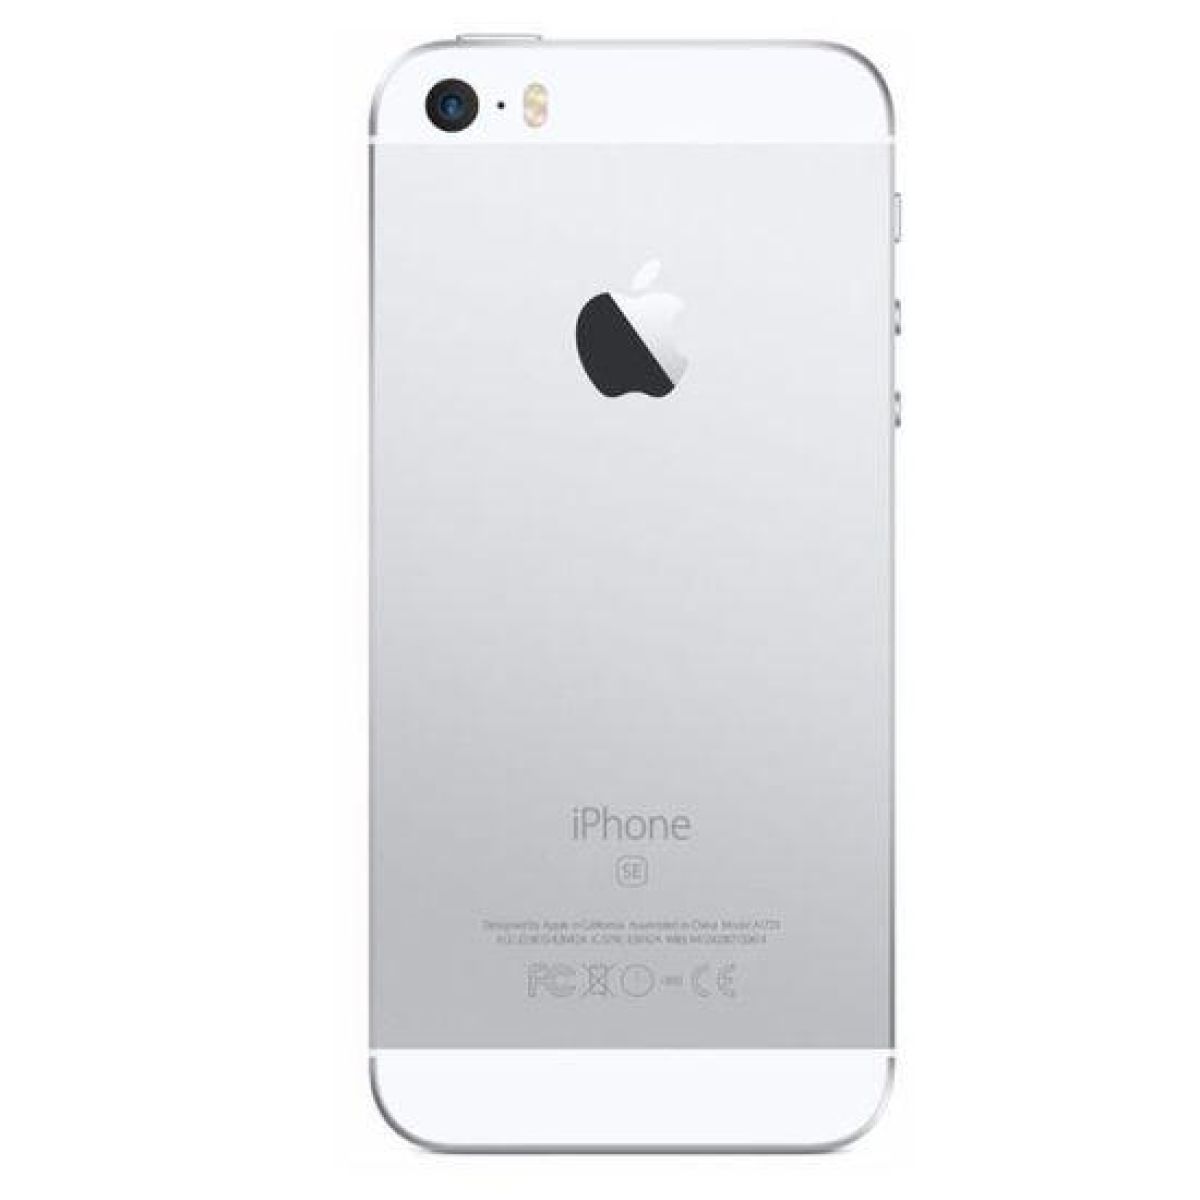 Apple iPhone SE (1re génération) 16 Go Argent Débloqué